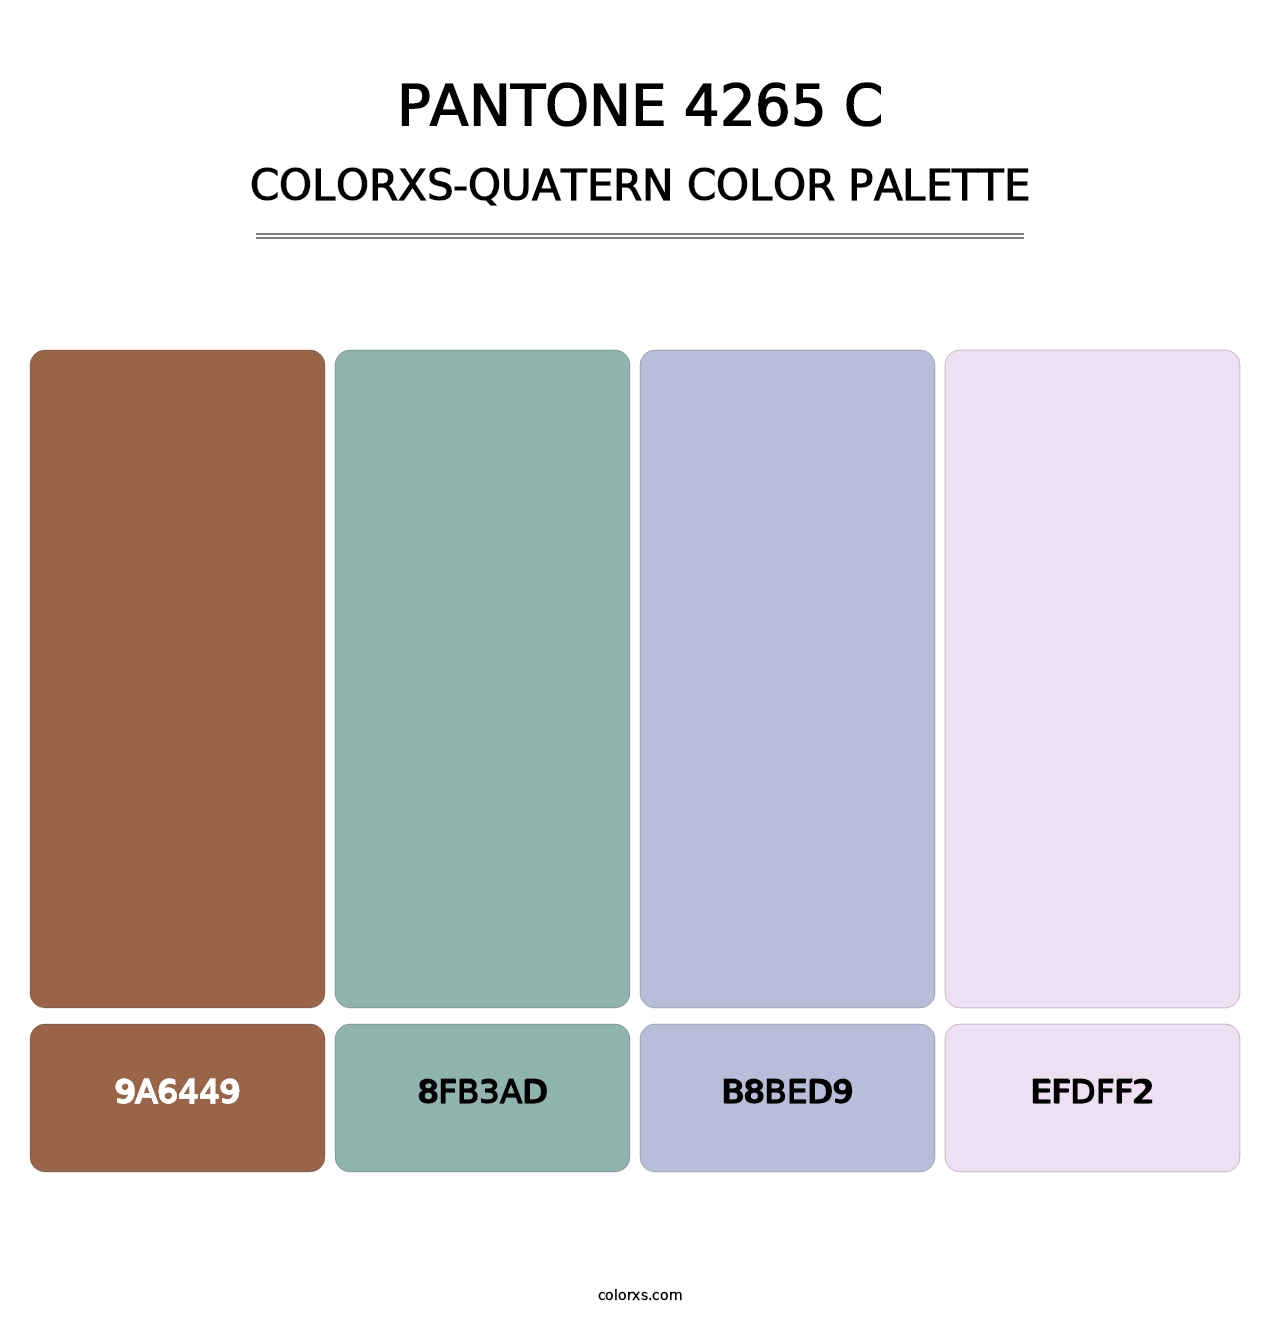 PANTONE 4265 C - Colorxs Quatern Palette